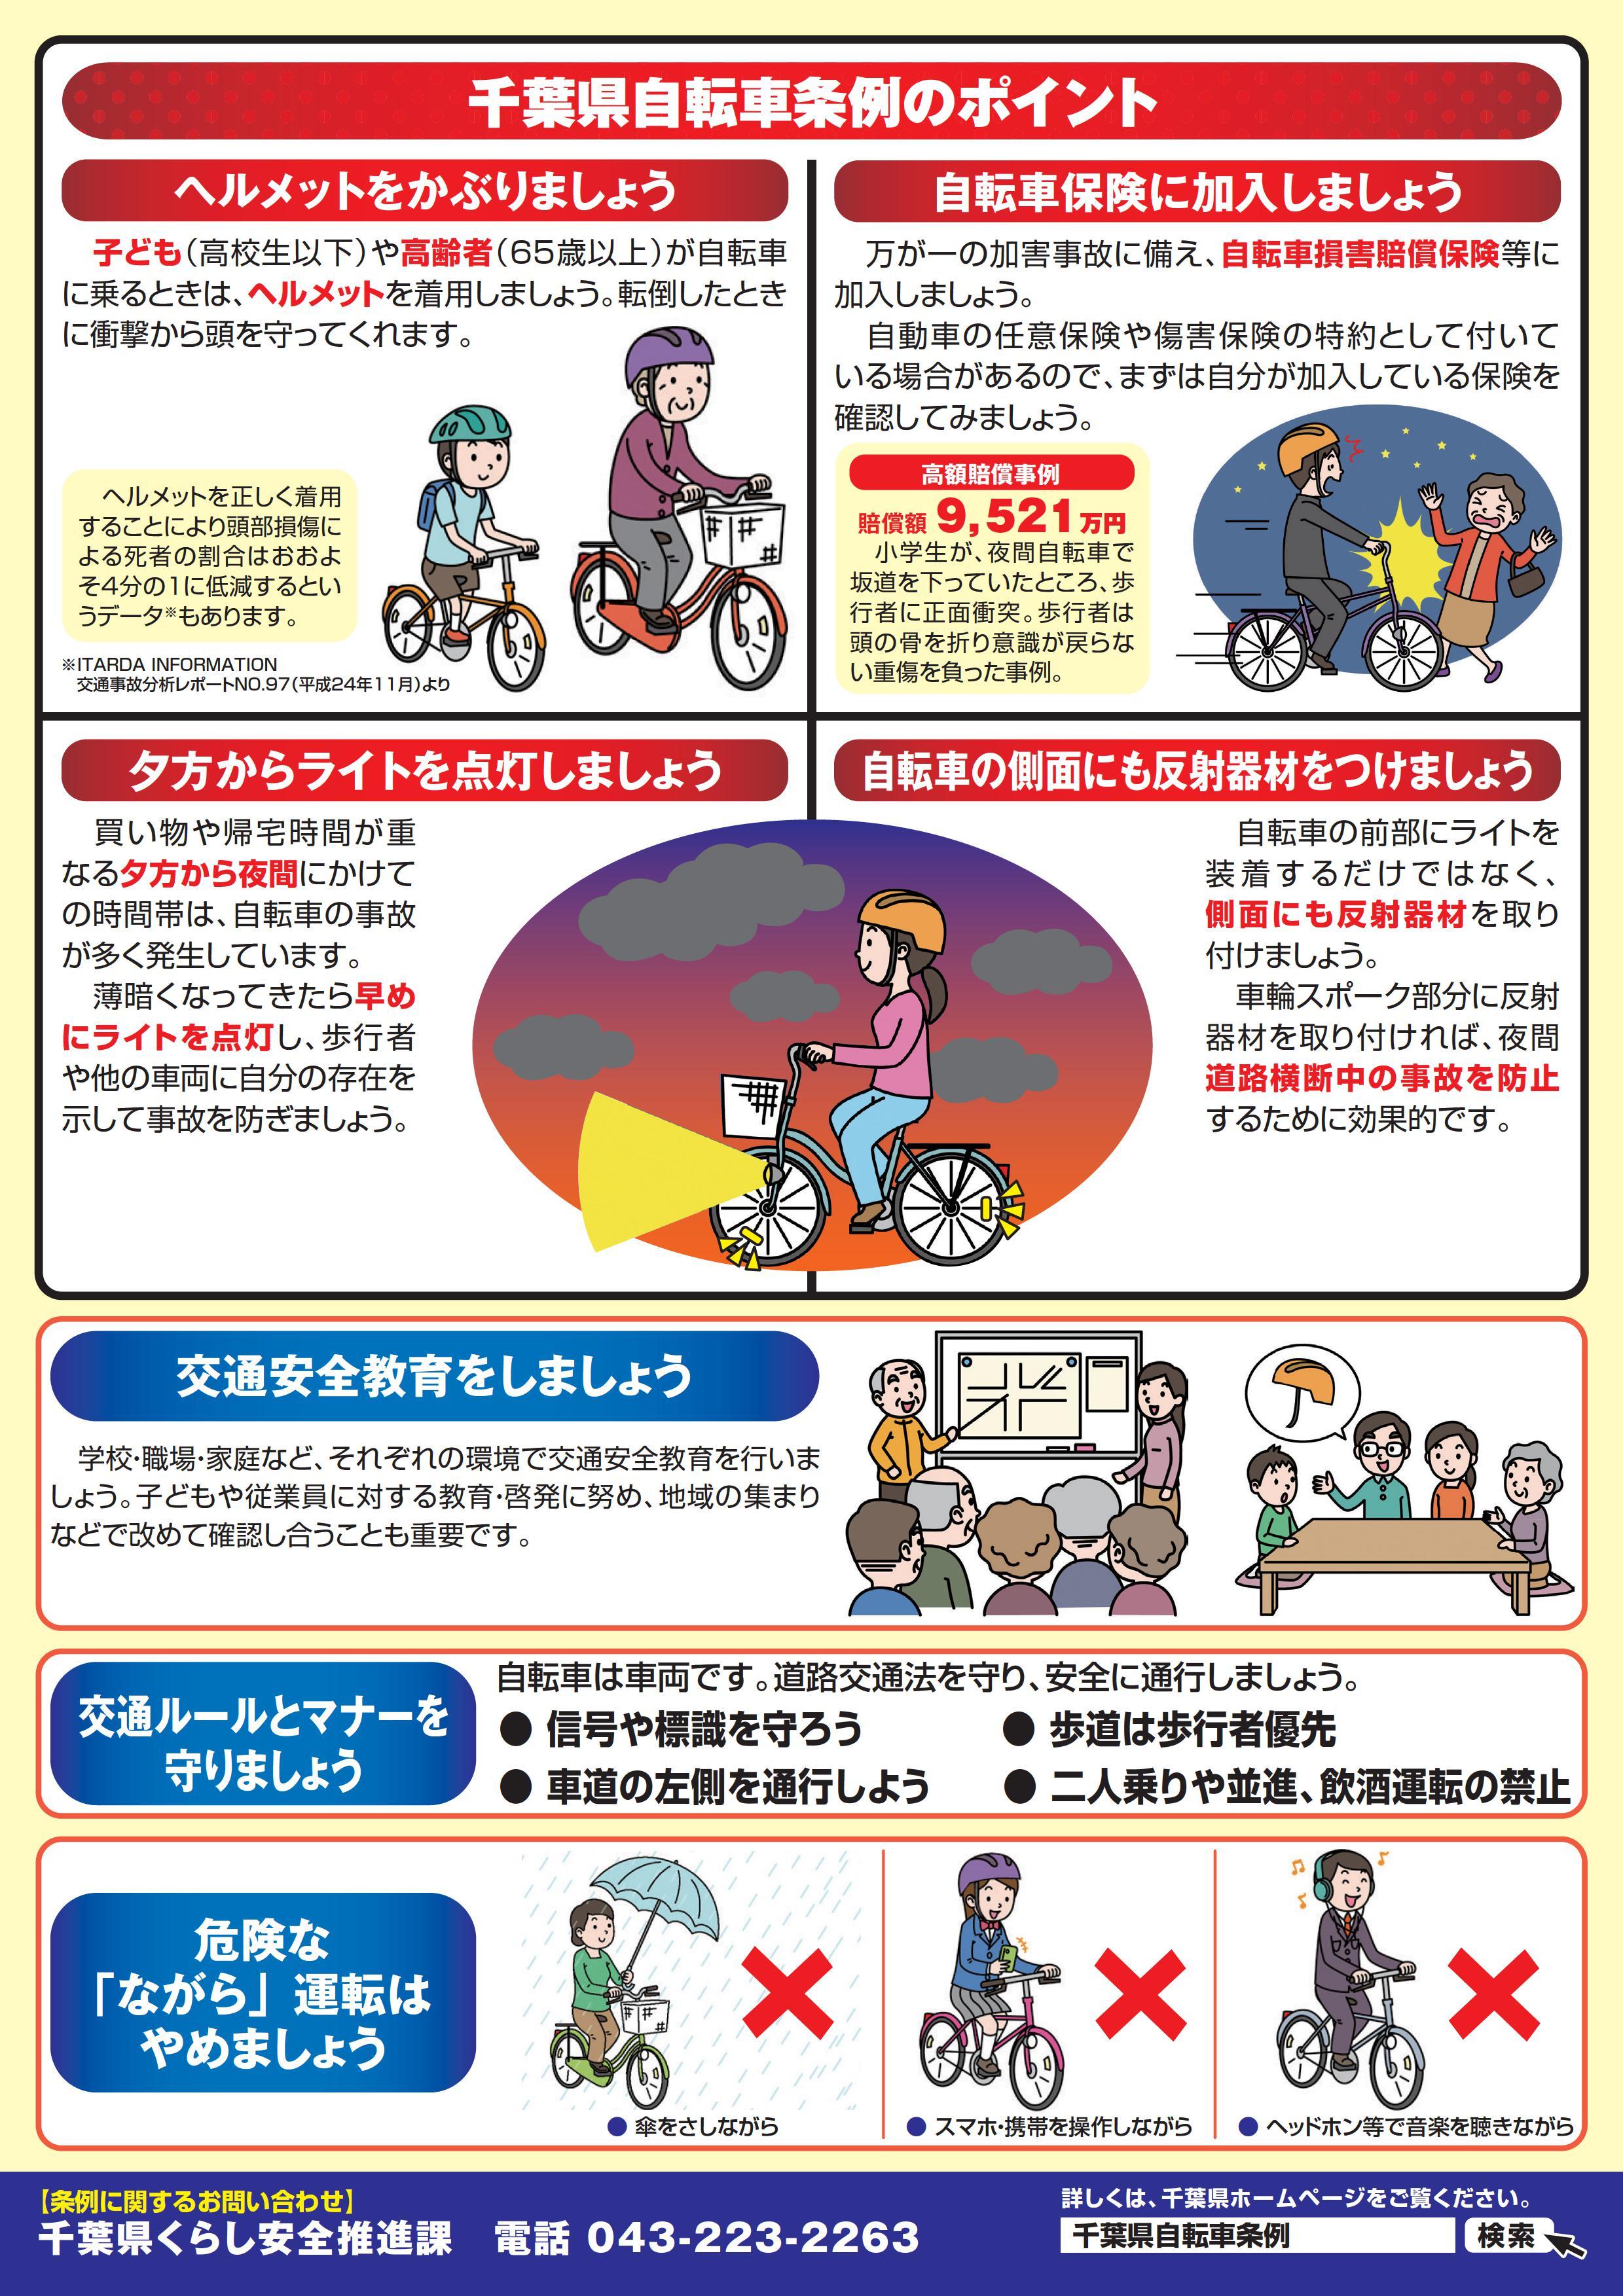 千葉県自転車条例のポイント